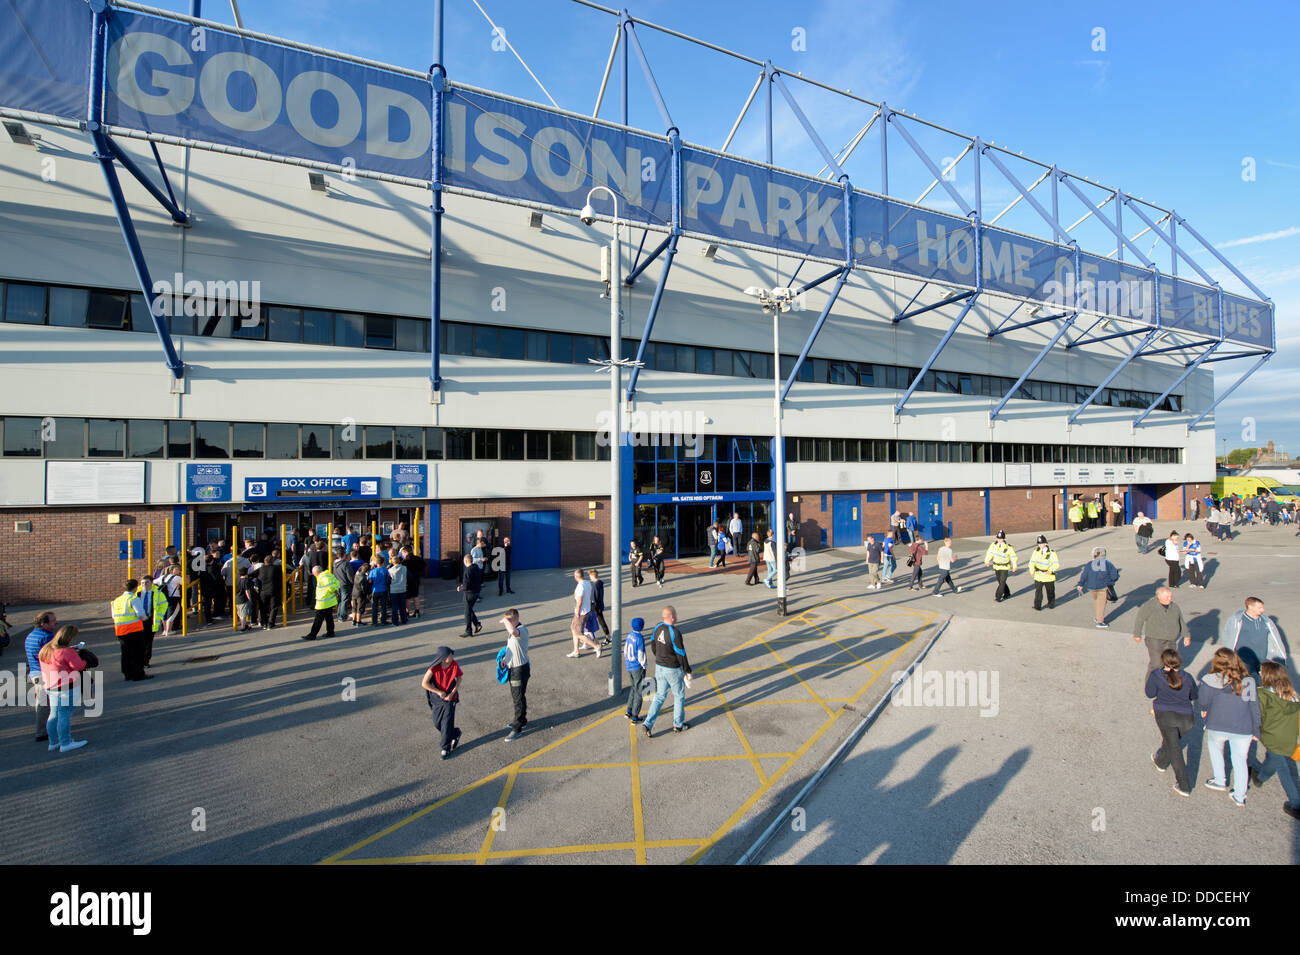 Un ampia angolazione del Goodison Park Stadium, casa di Everton Football Club (solo uso editoriale). Foto Stock